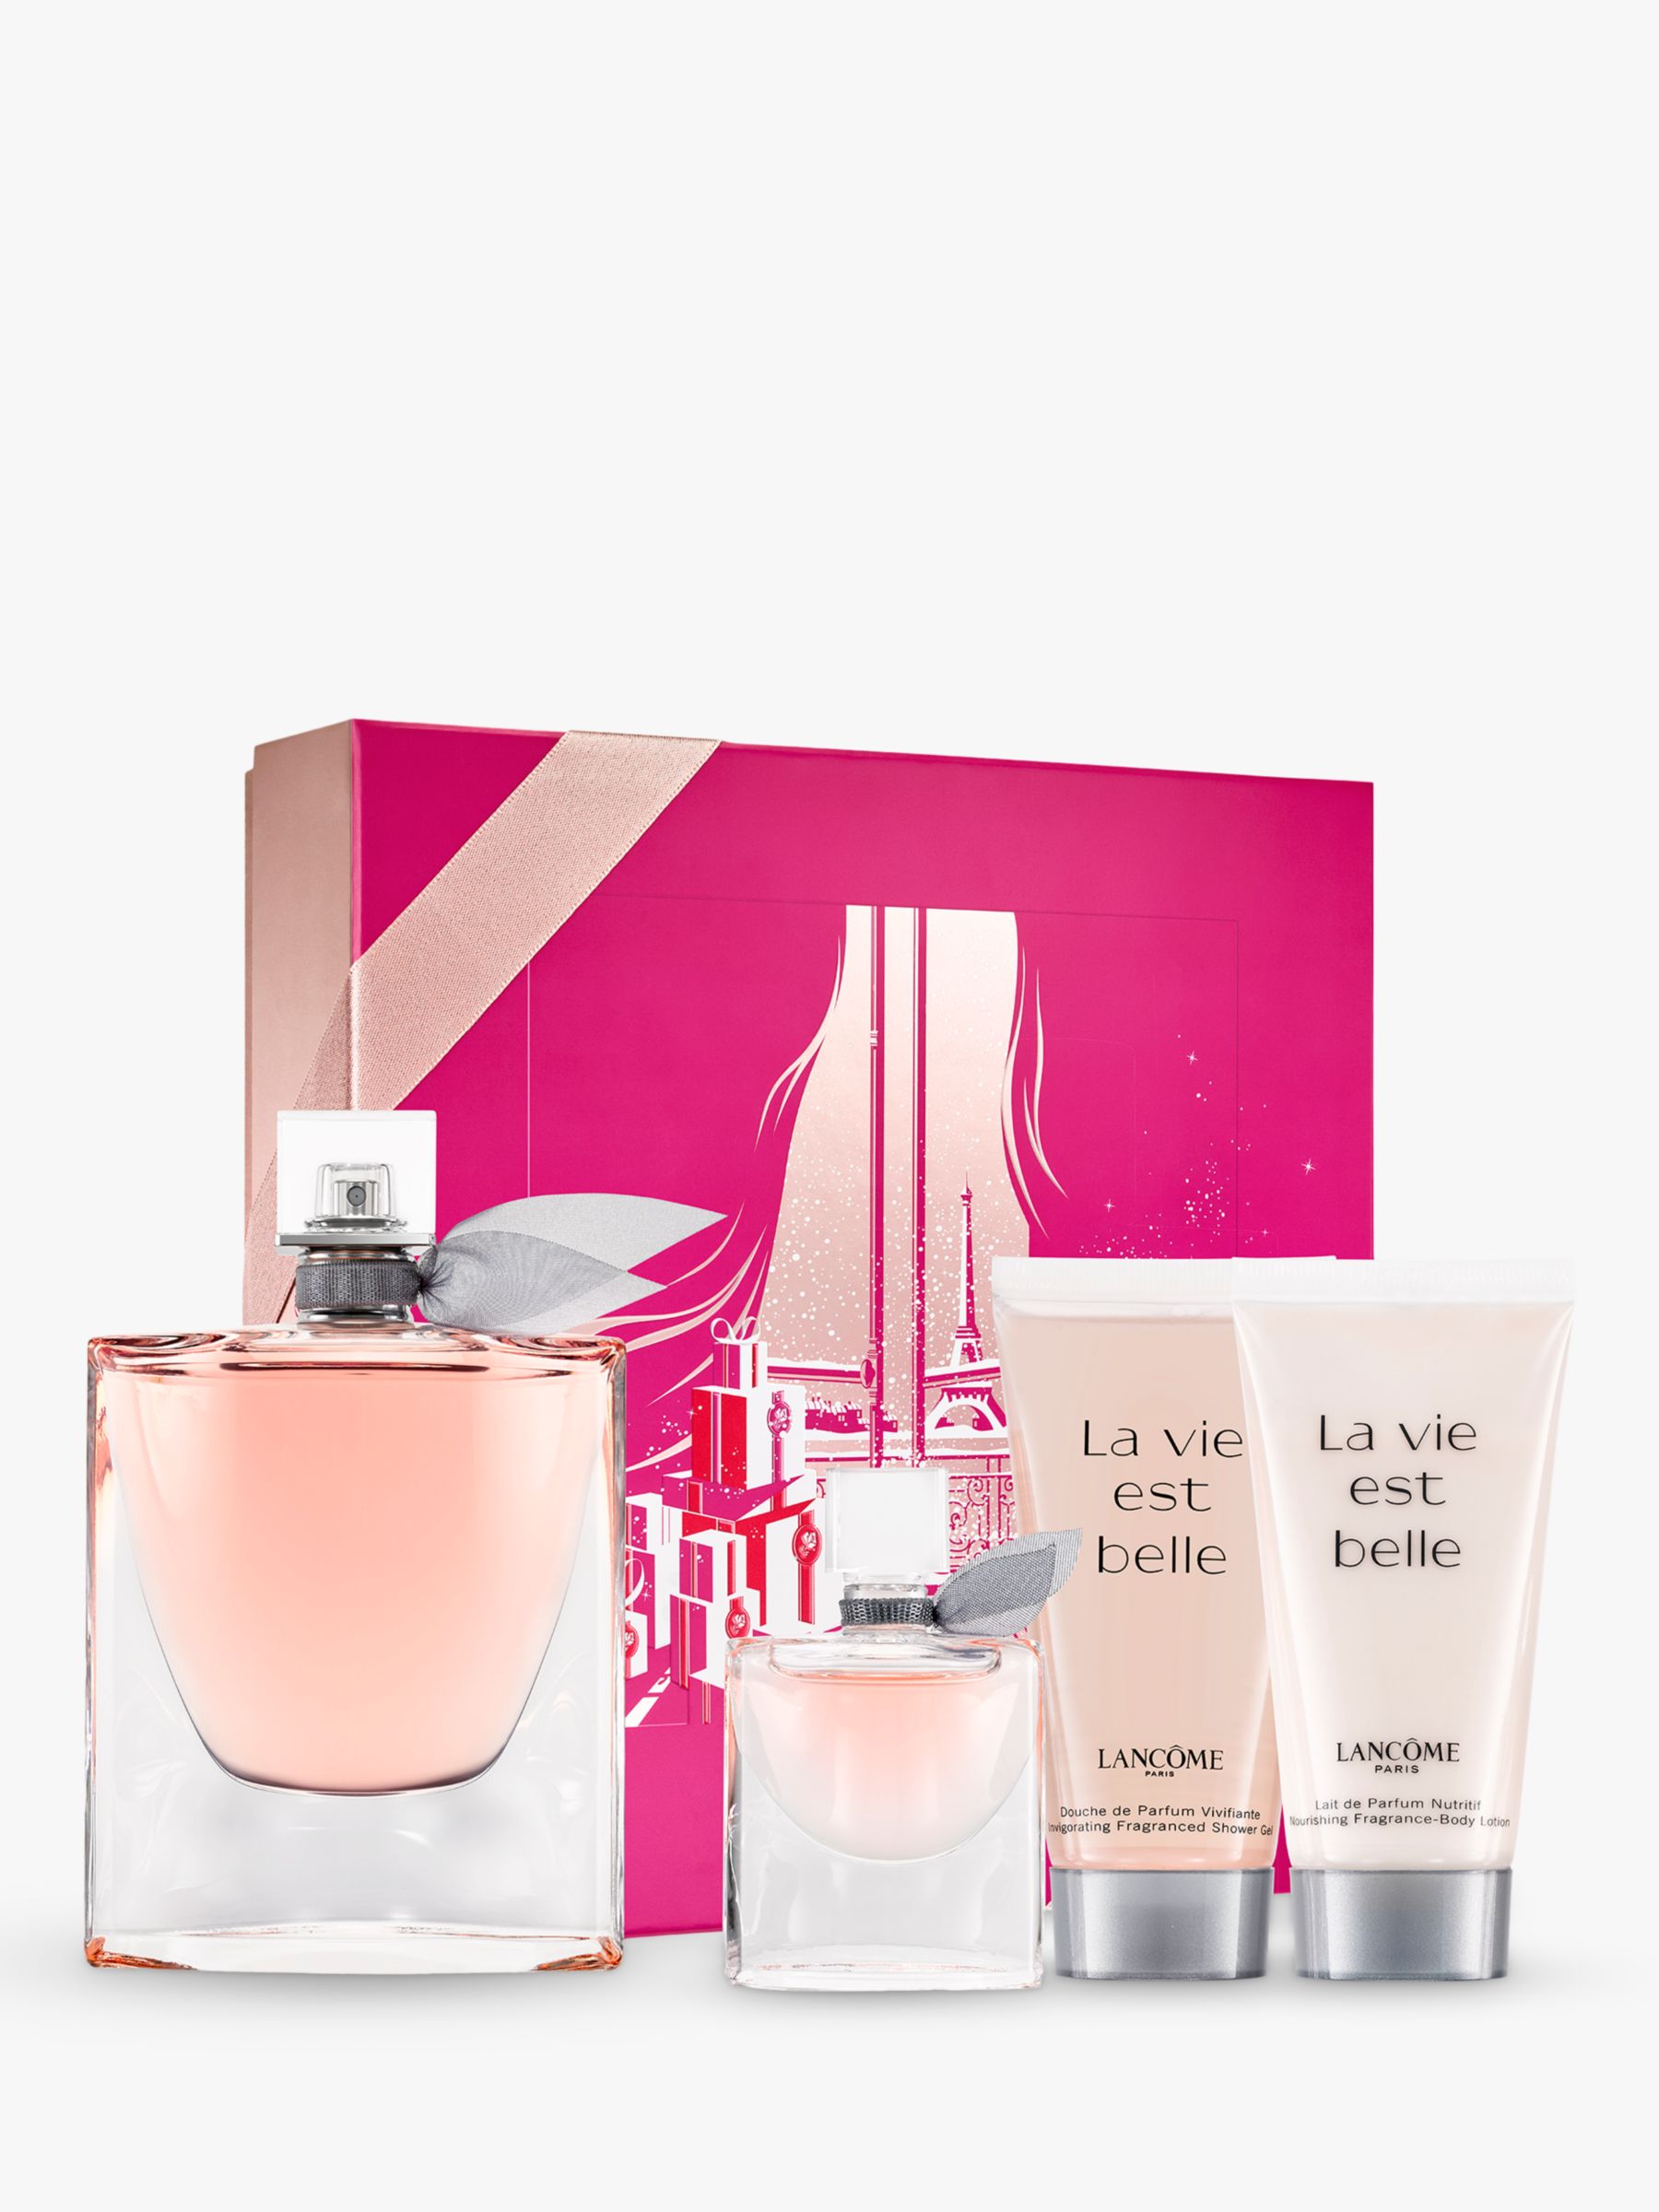 Lancôme La Vie Est Belle Eau de Parfum 100ml Fragrance Gift Set at John Lewis & Partners